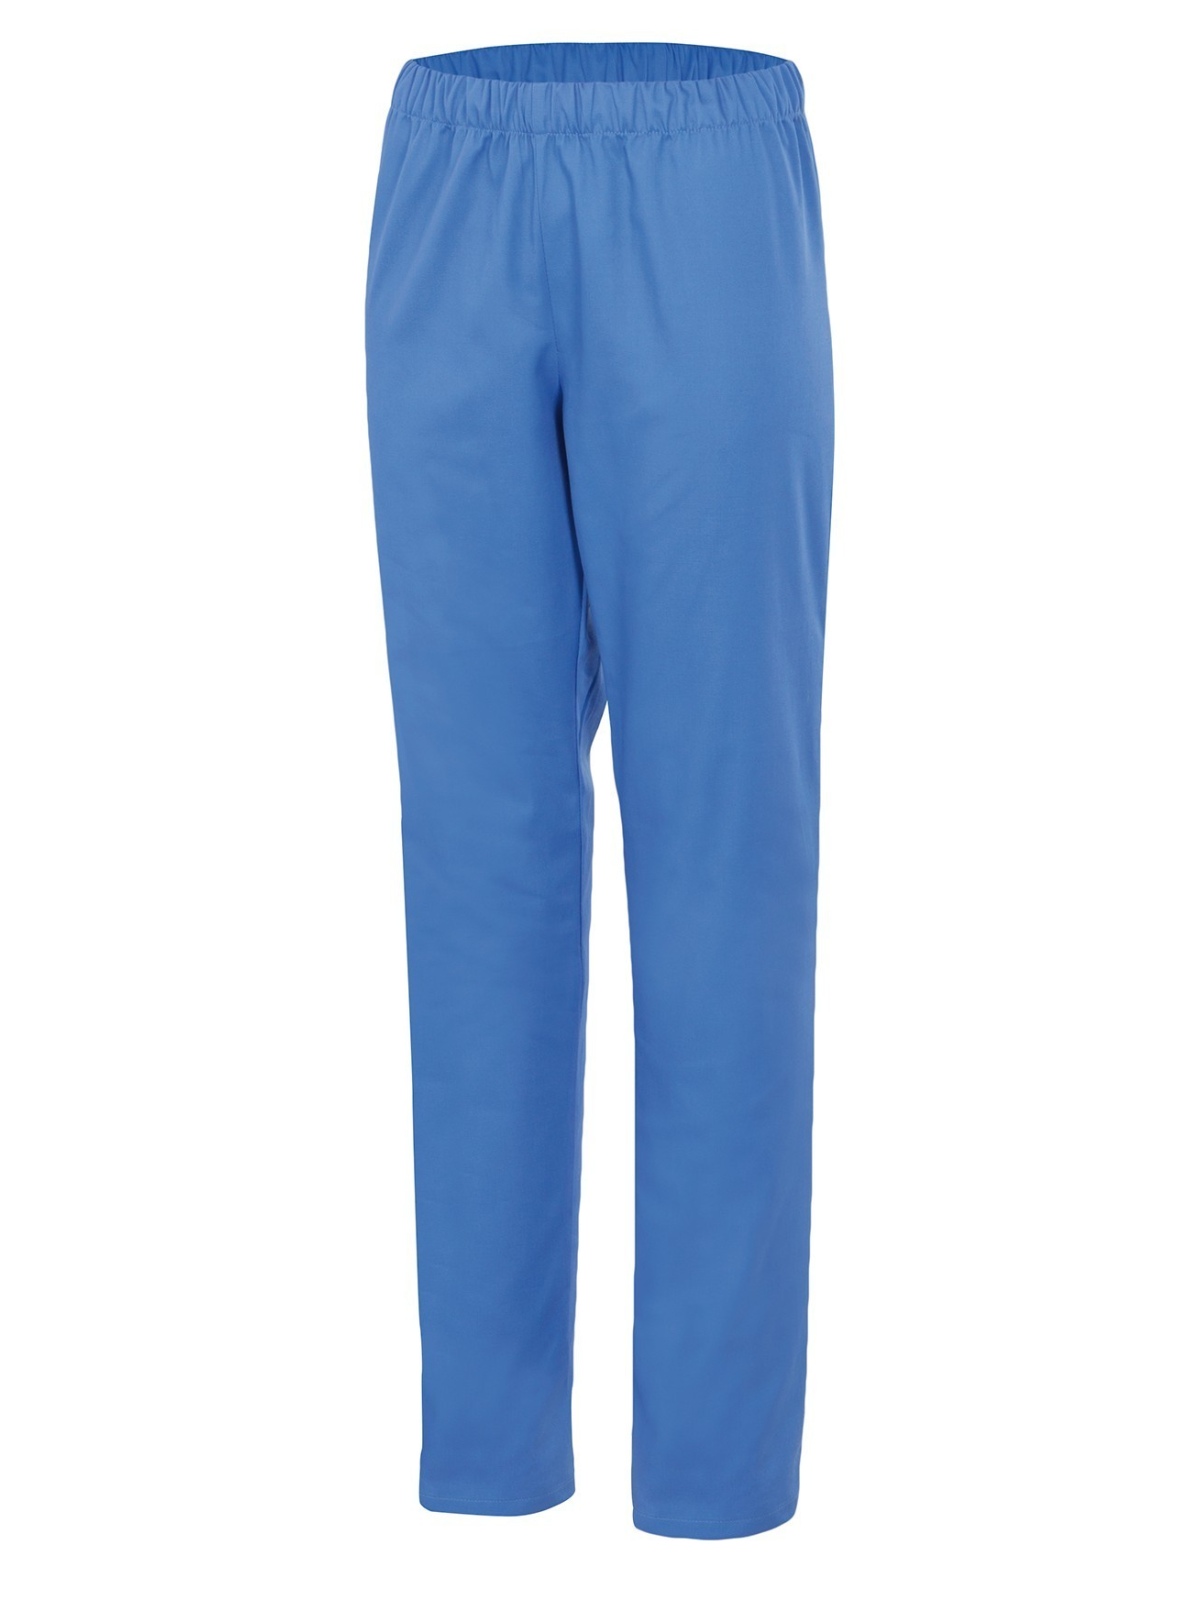 Pantalón de pijama sanitario azul Velilla Uniforme Sanitario